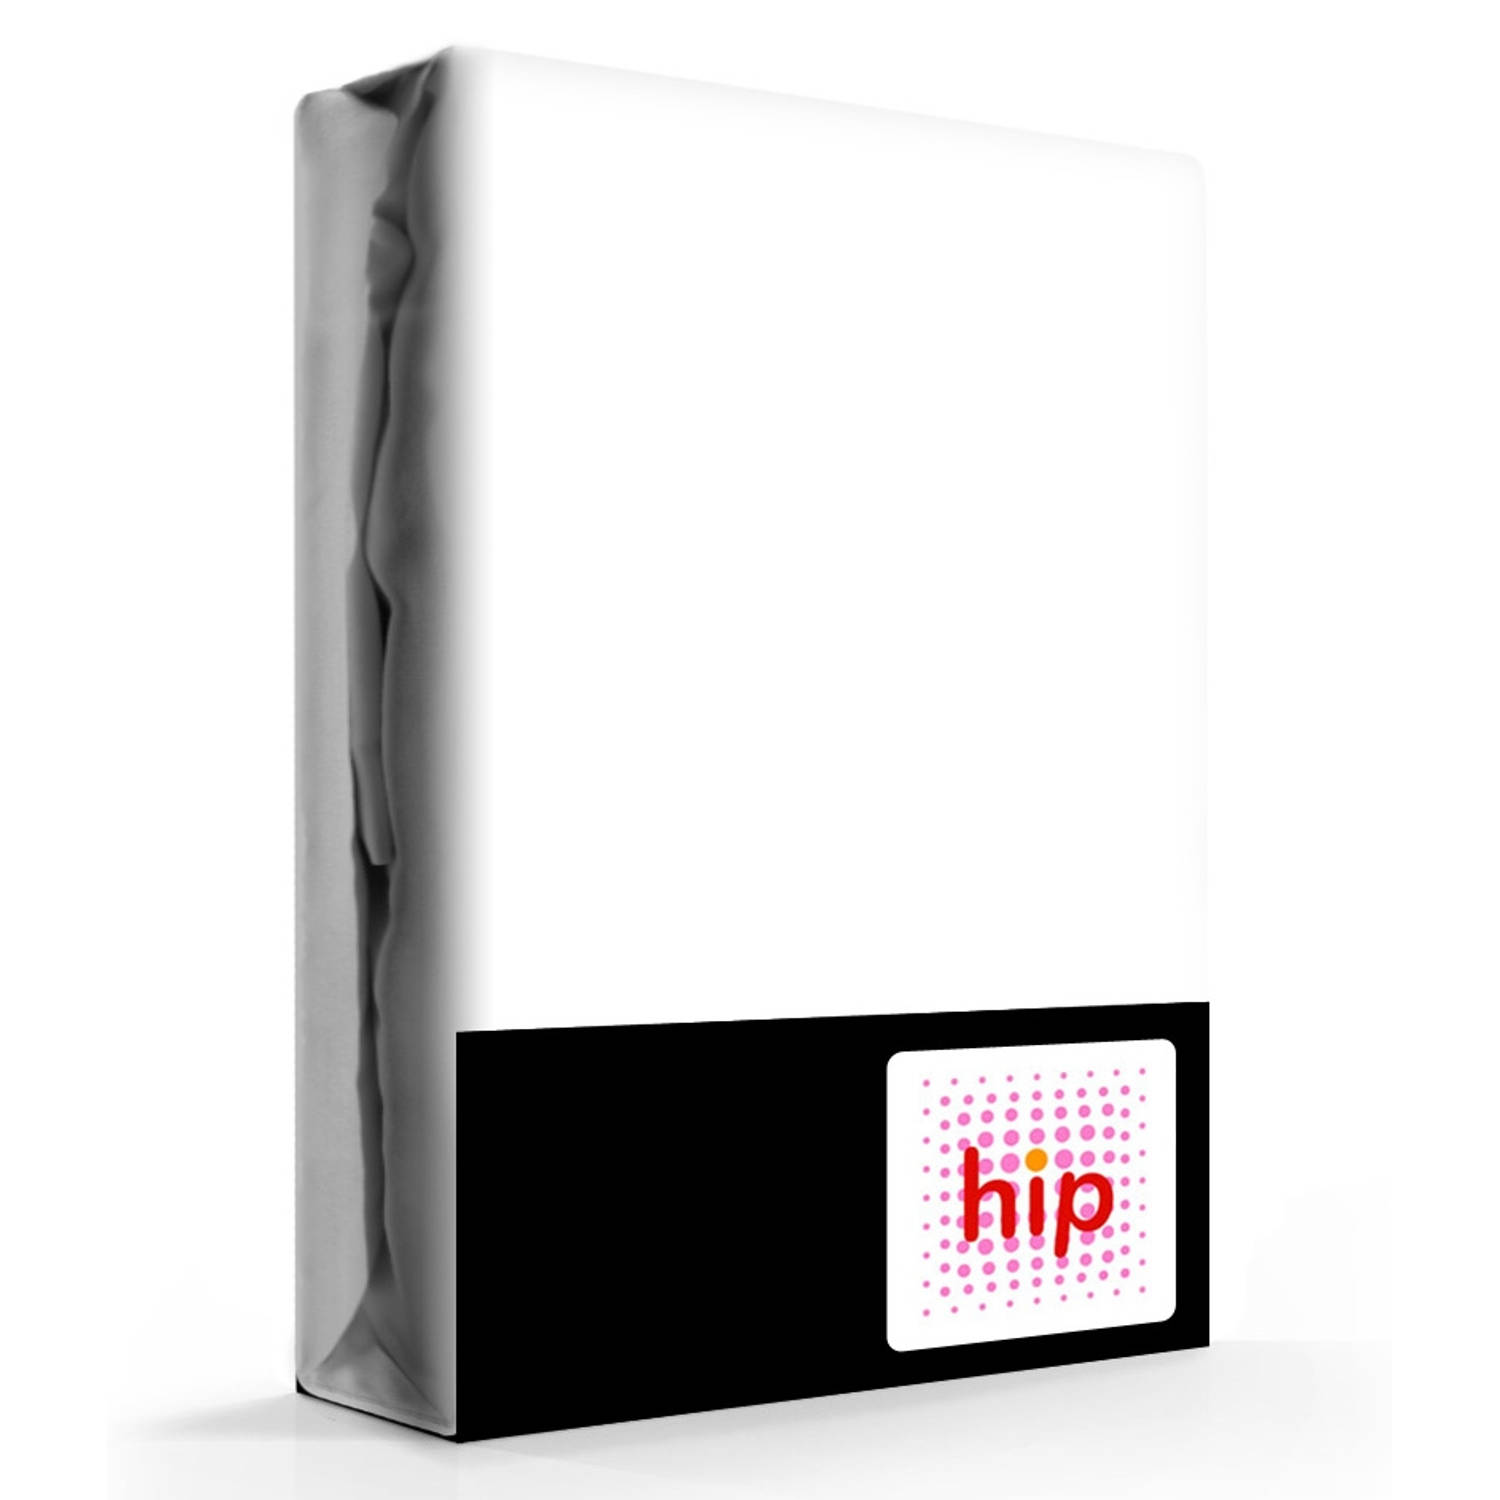 HIP Hoeslaken Satijn Wit-1-persoons (100x200 cm)